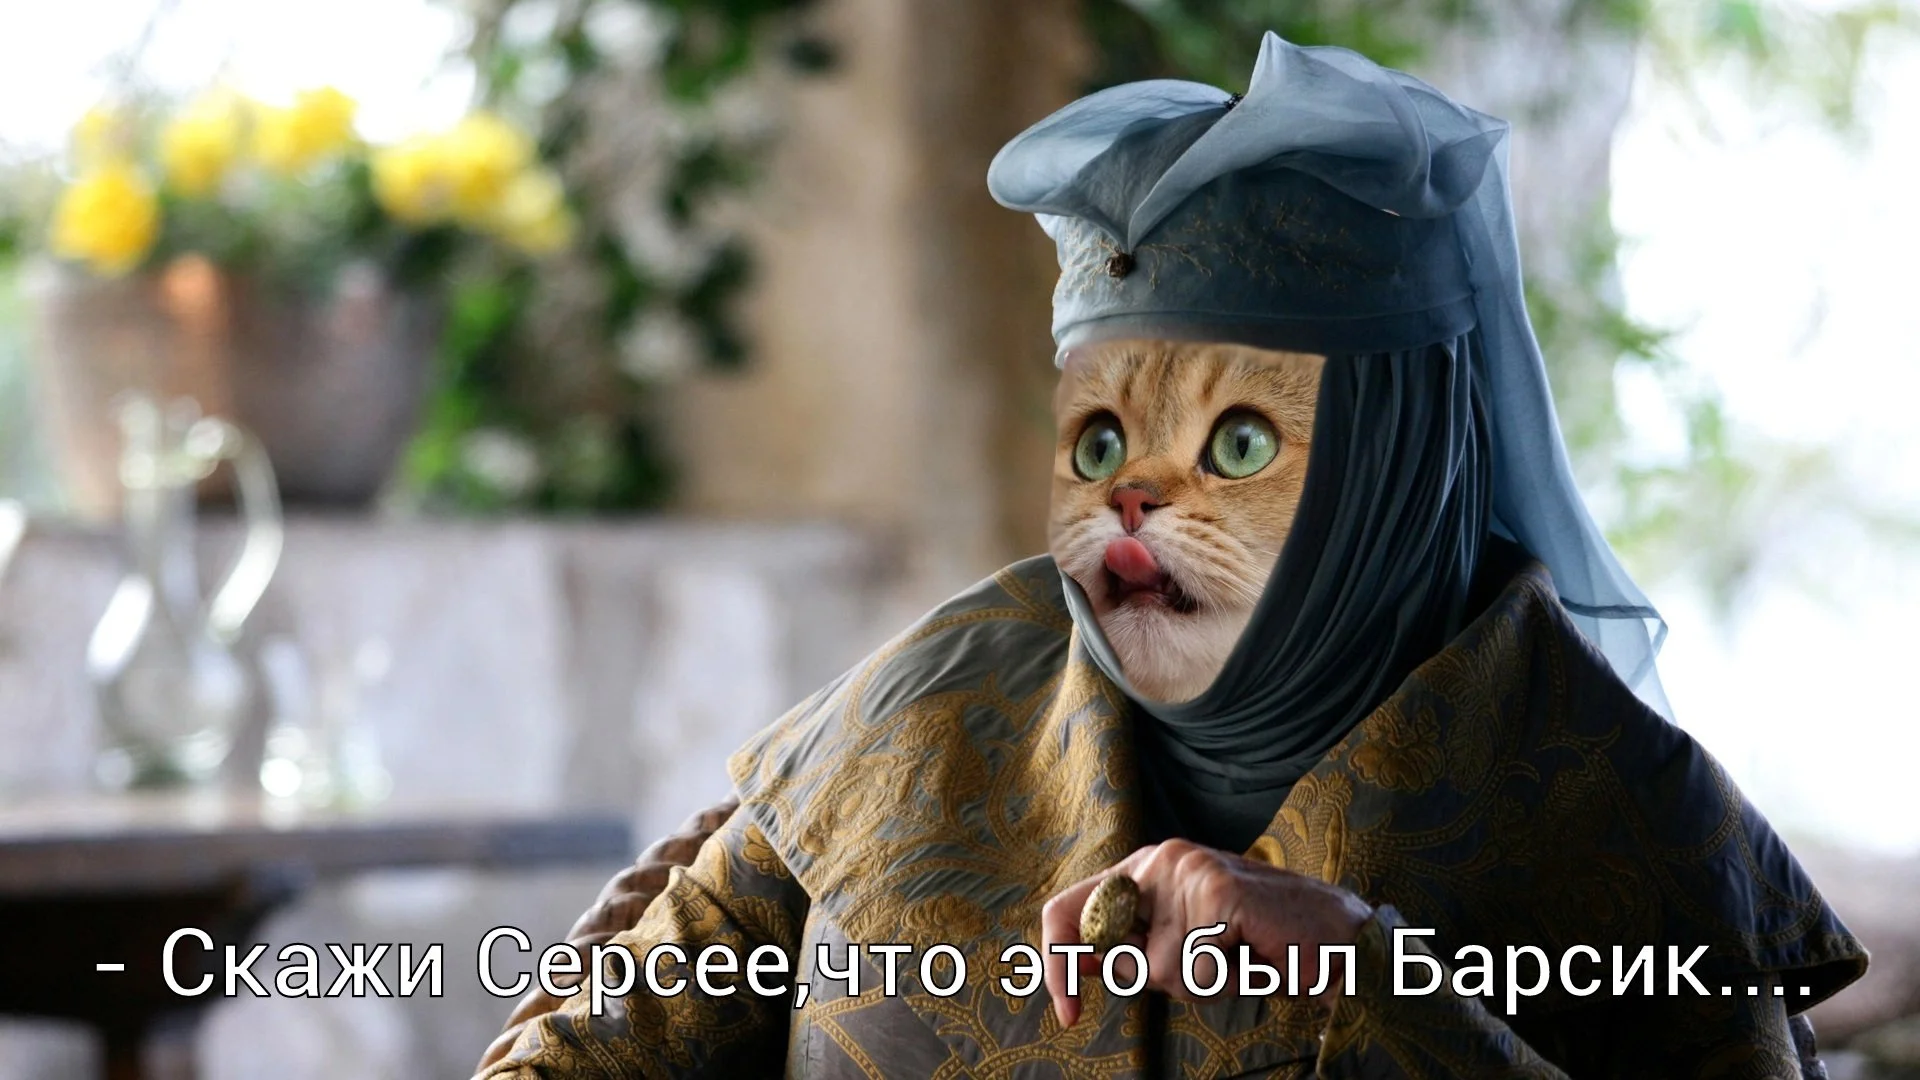 Оленна Тирелл из «Игры престолов» стала героем нового мема с котами - фото 11